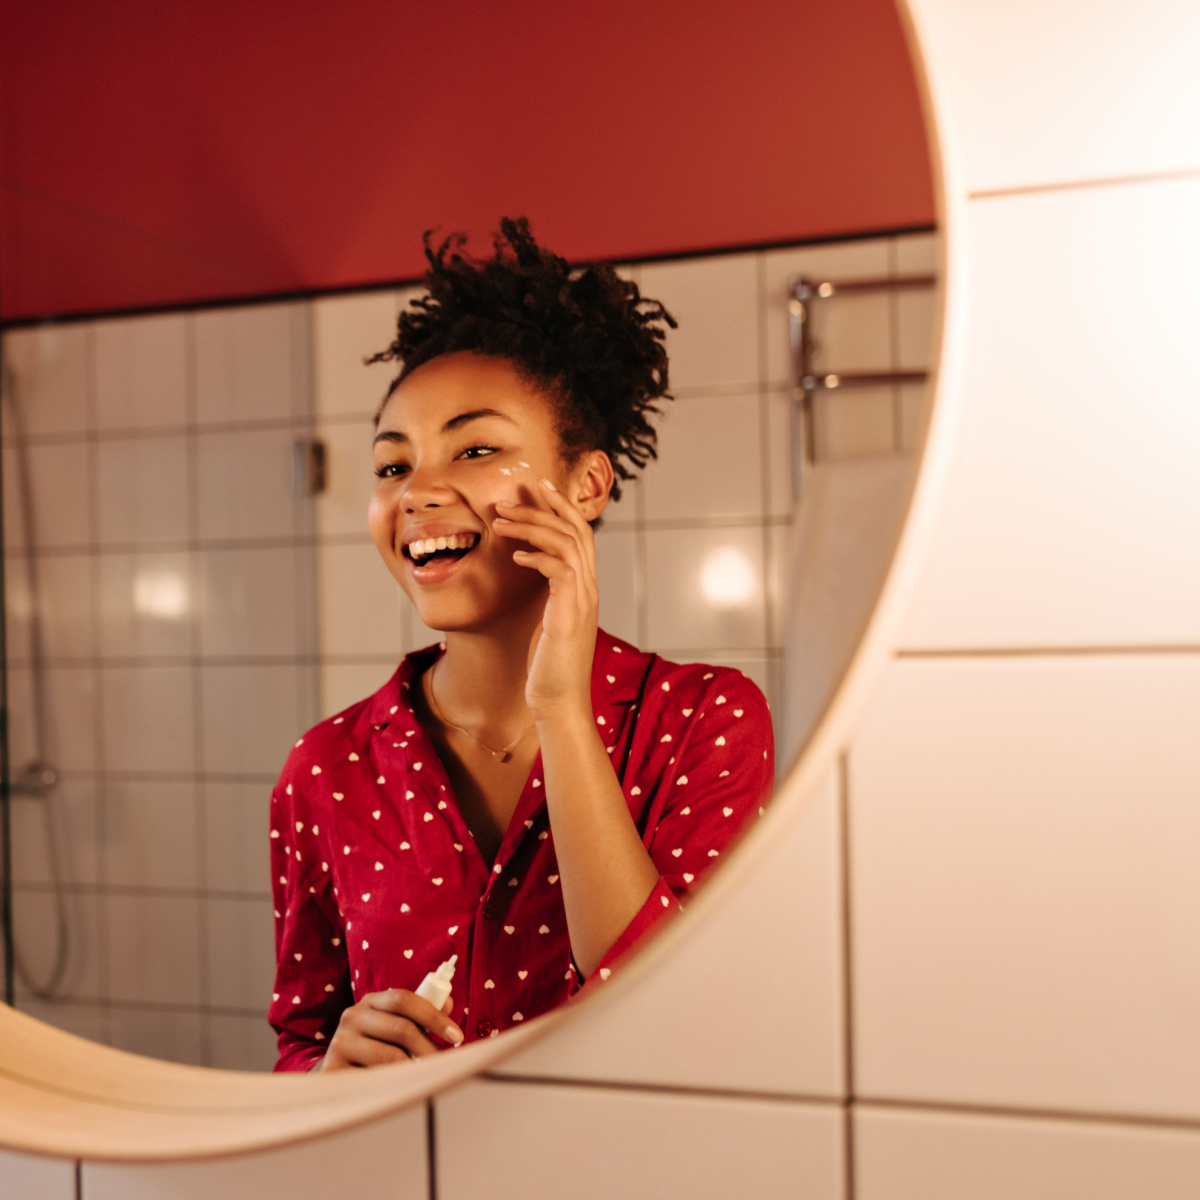 woman applying eye cream to under-eyes in warm light bathroom mirror